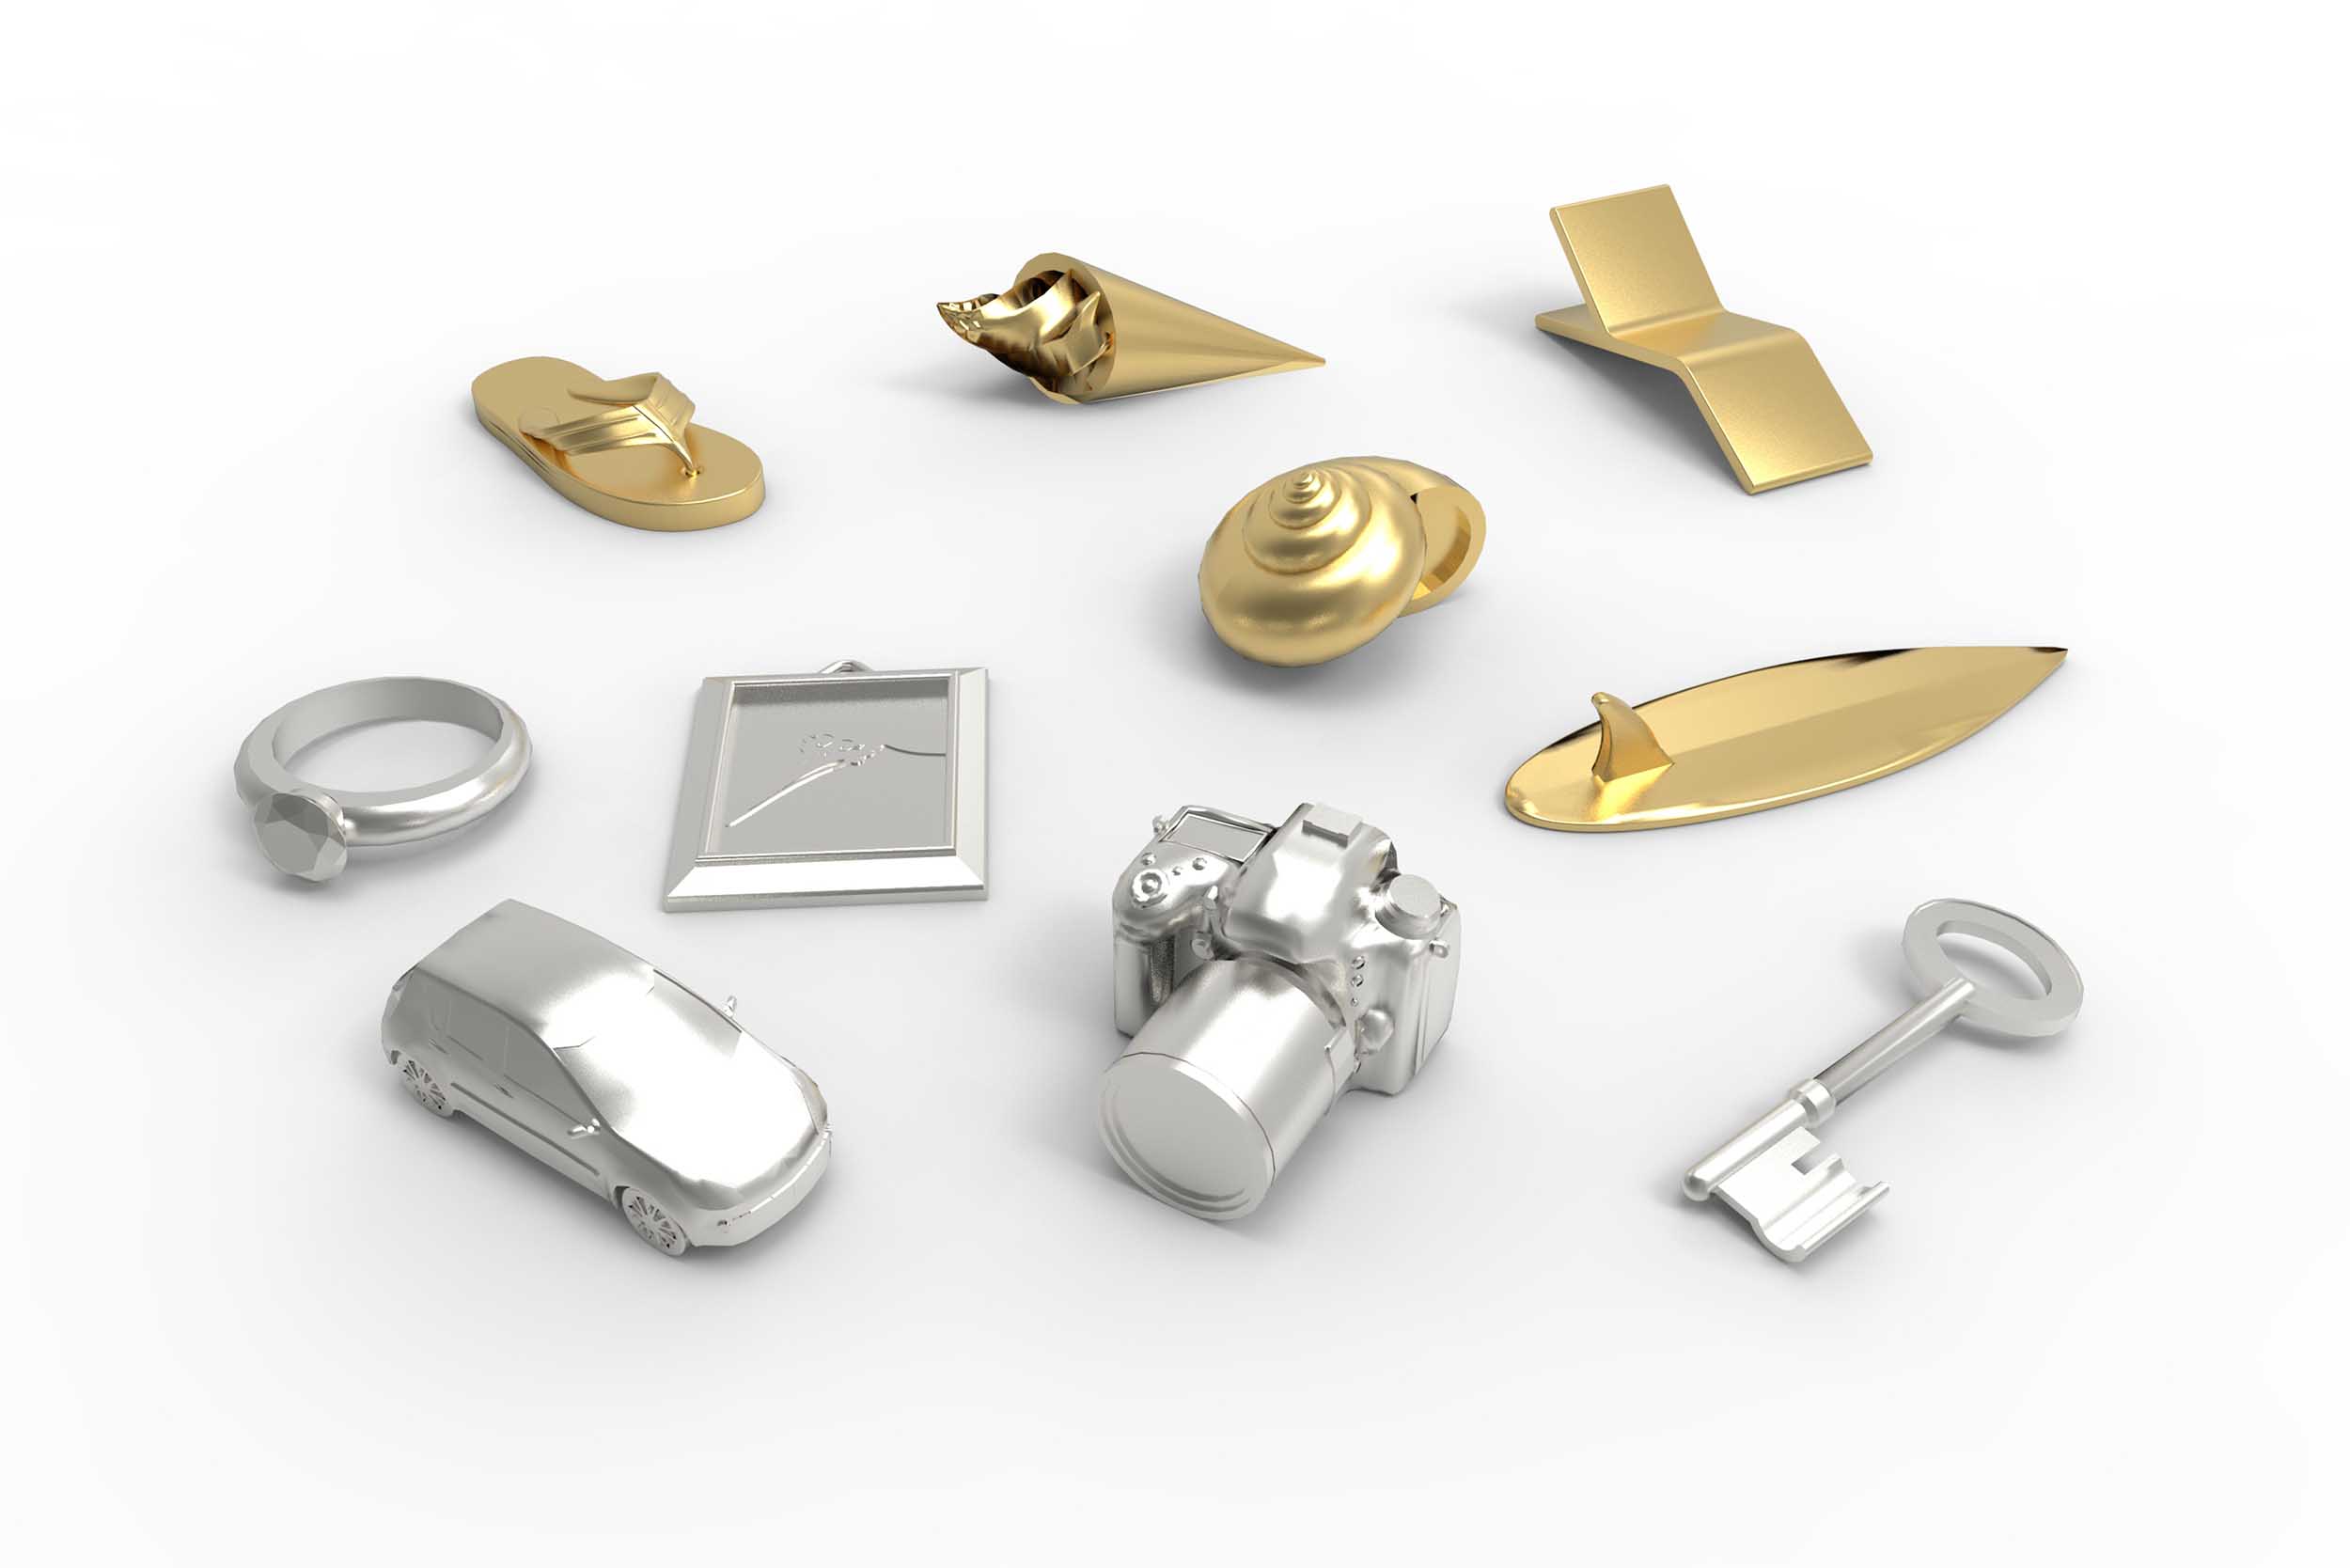 Vues 3D photoréalistes des mini objets dorés et argentés, symboliques de leur valeur, insérés dans le jeu : voiture, appareil photo, clé, œuvre d'art, bijou...